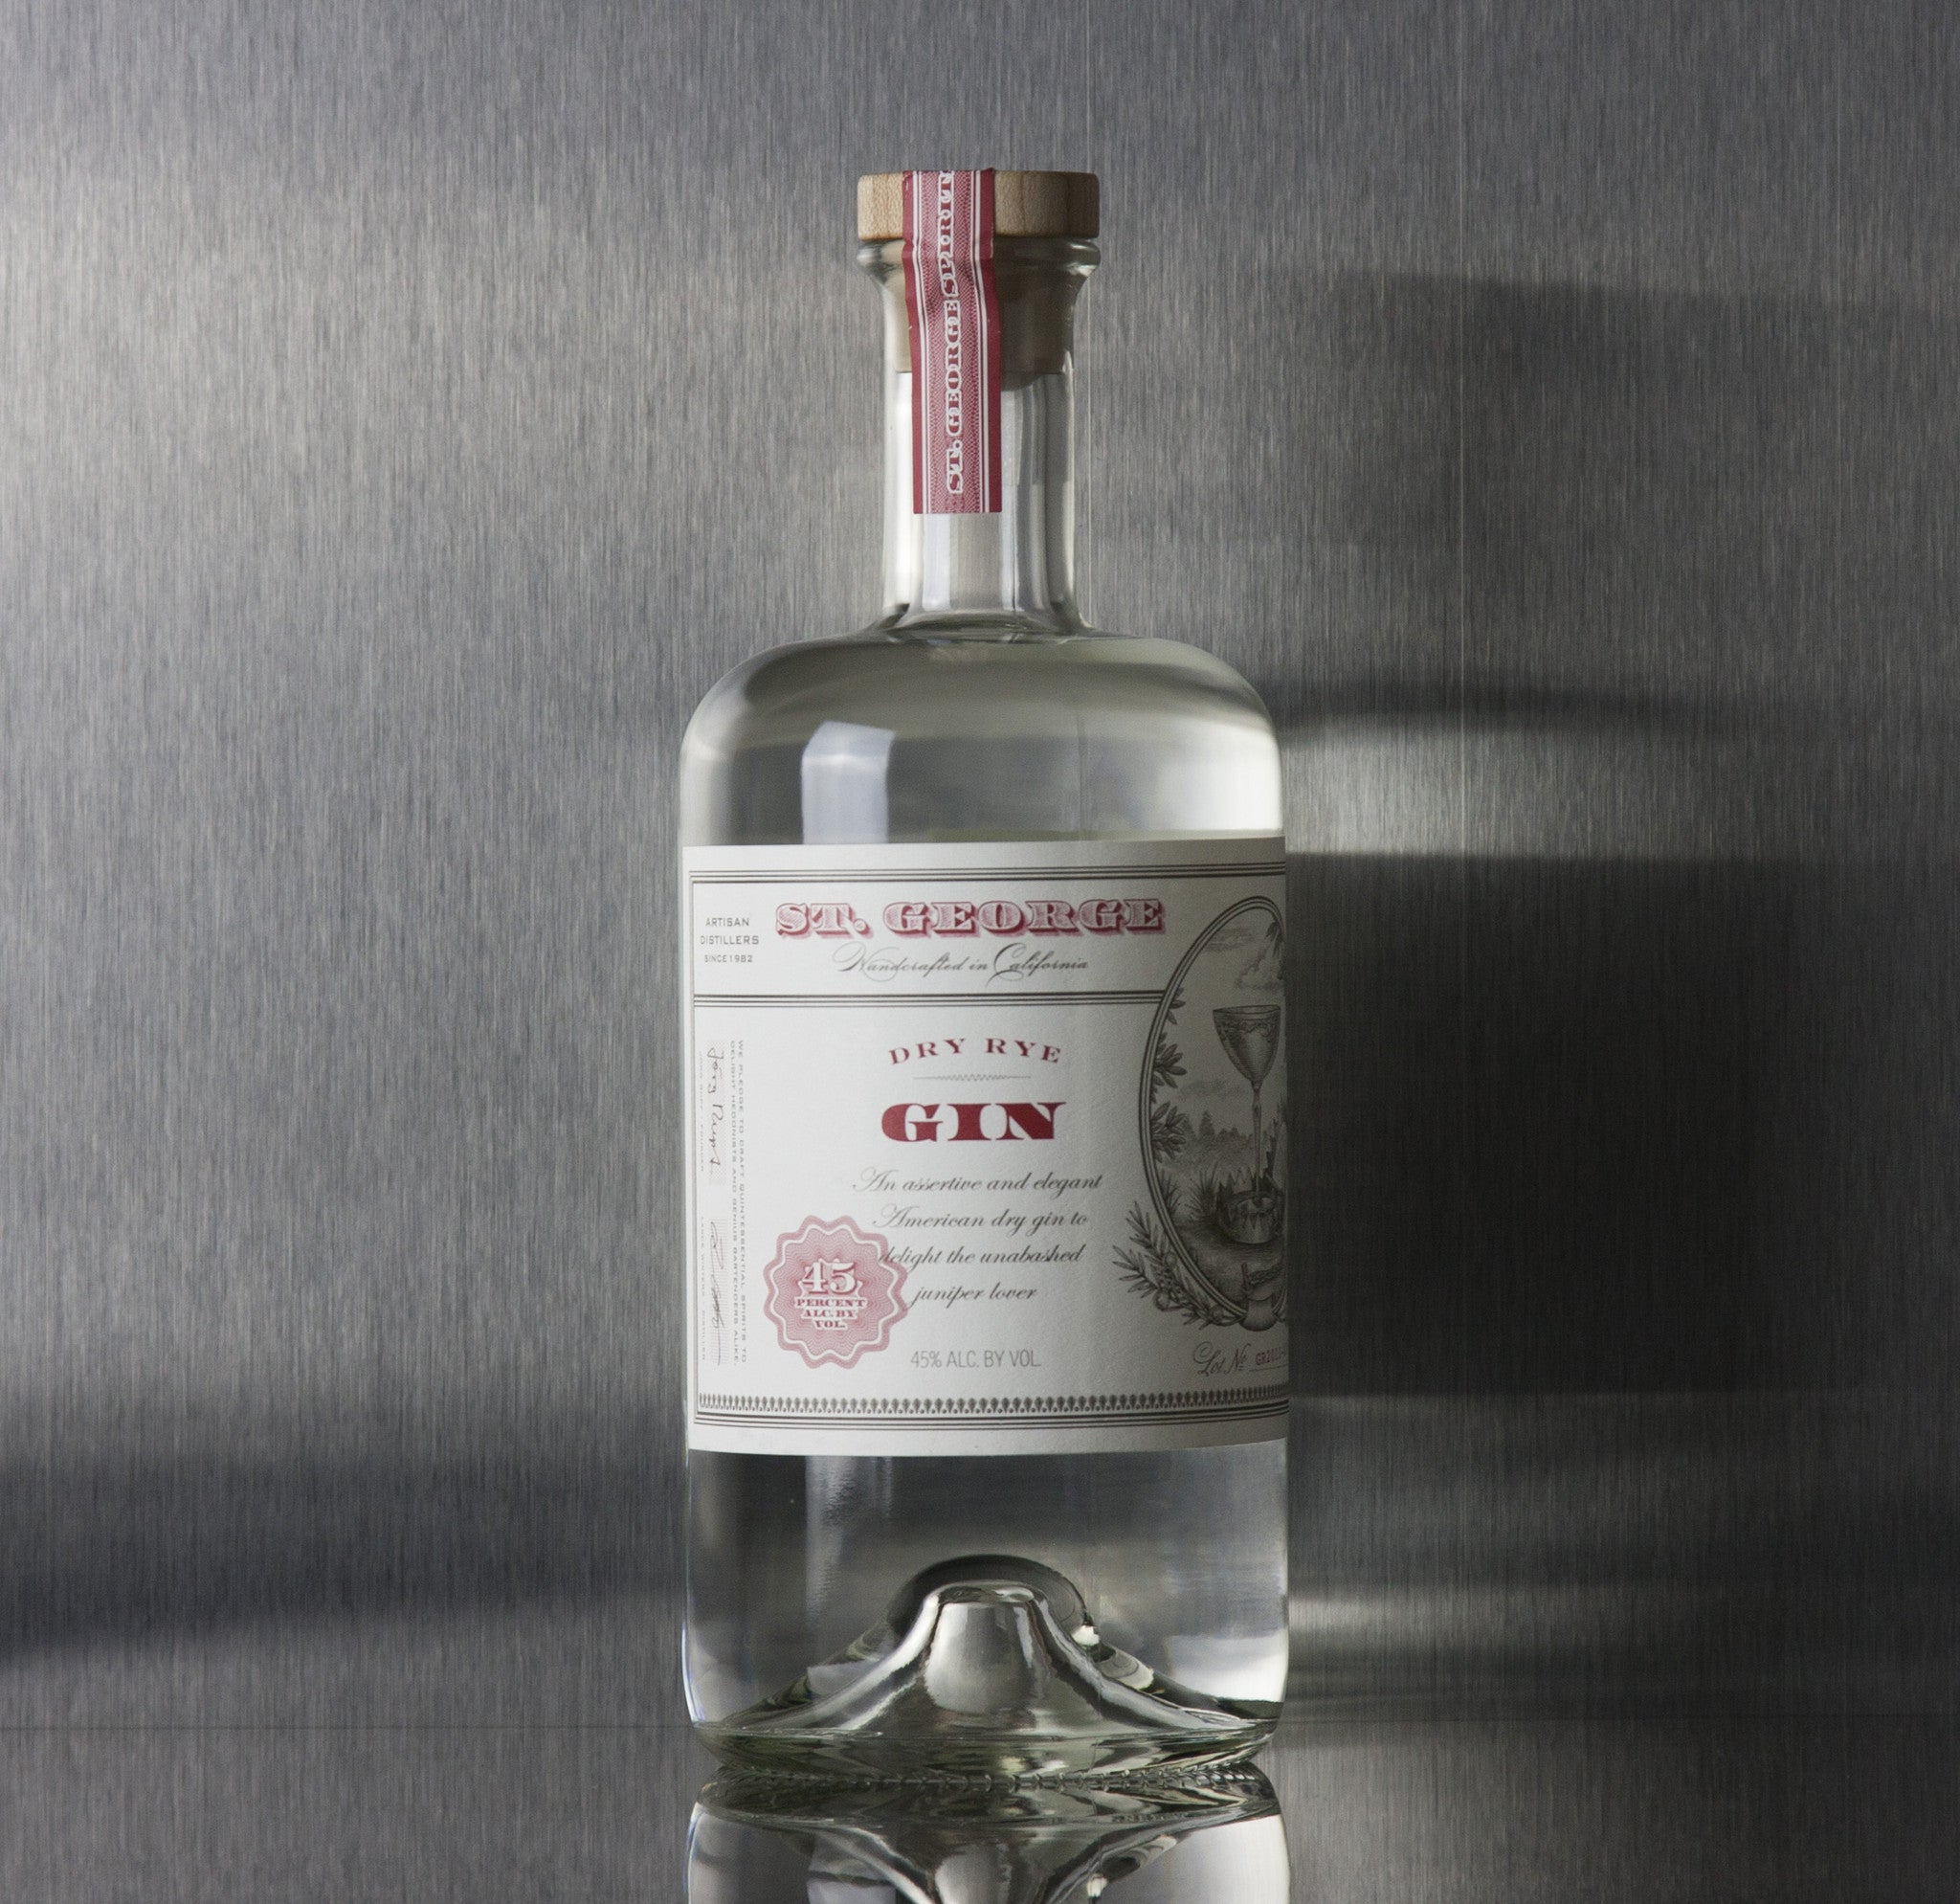 St. George Dry Rye Gin 750 ml